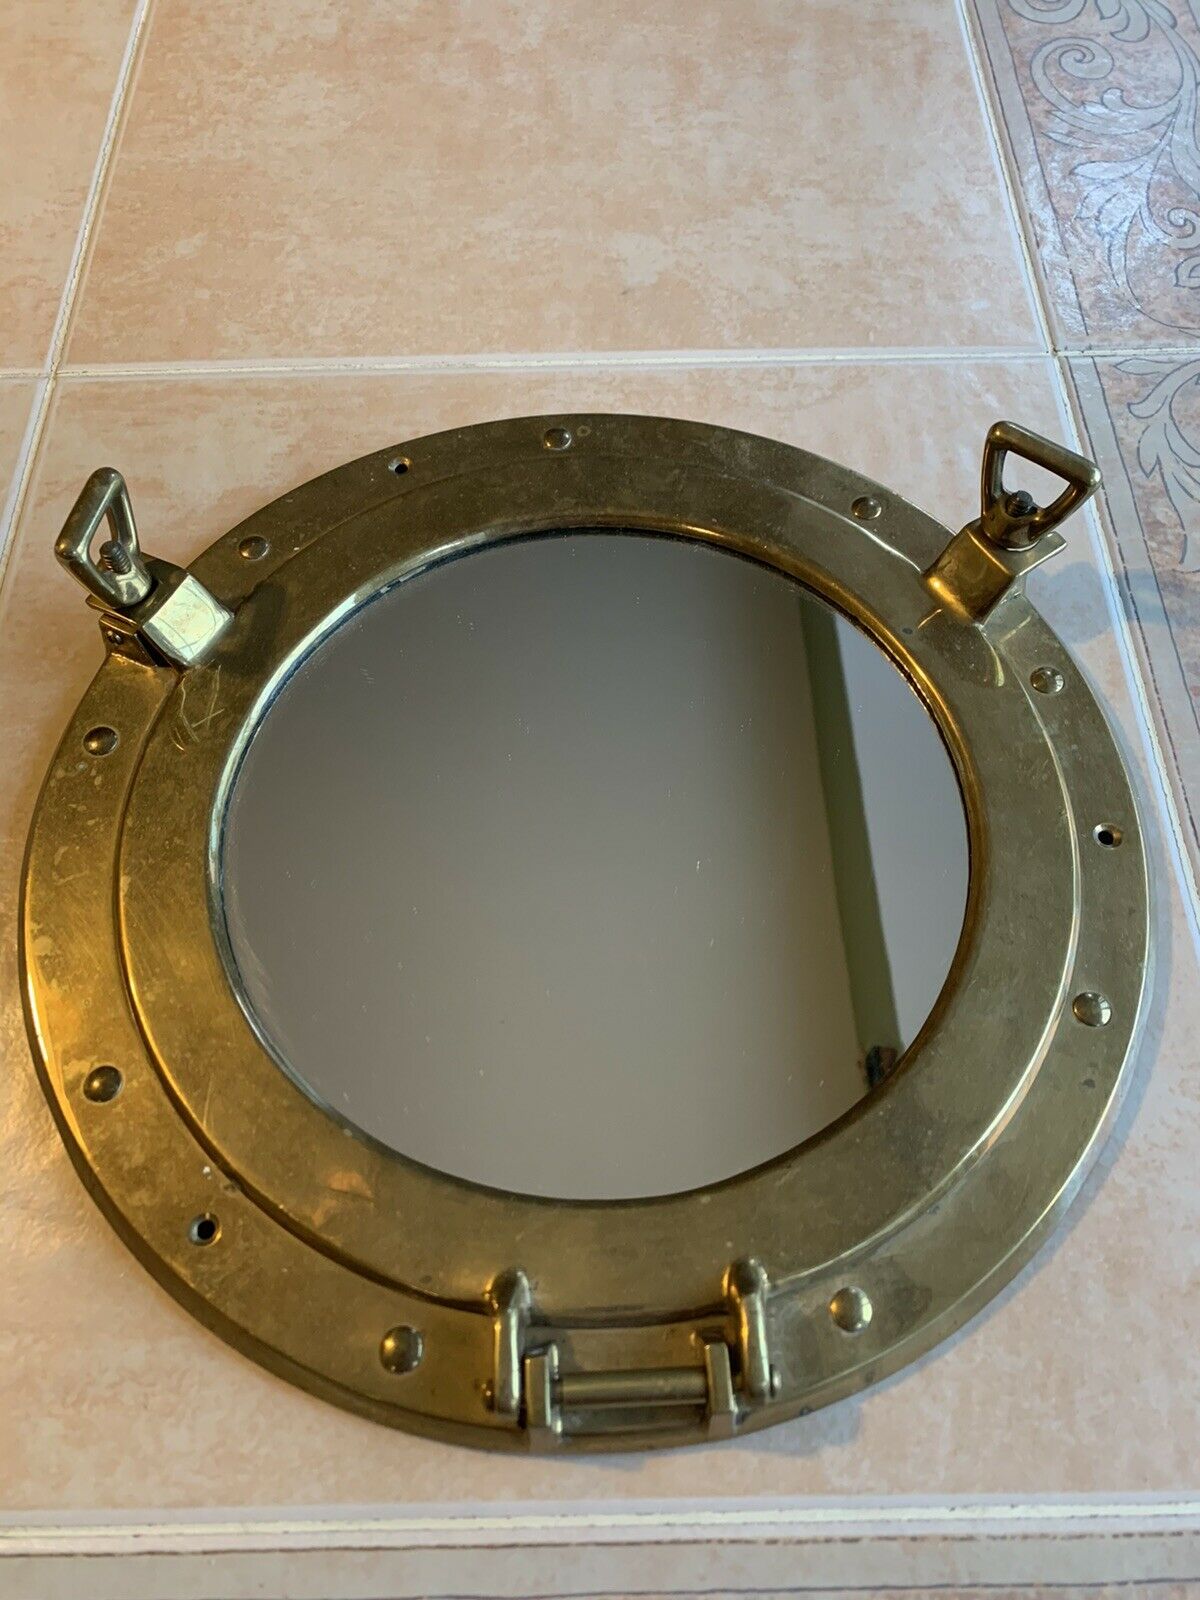 Brass 11.5" Porthole Mirror Working Hinge Coastal Nautical Decor